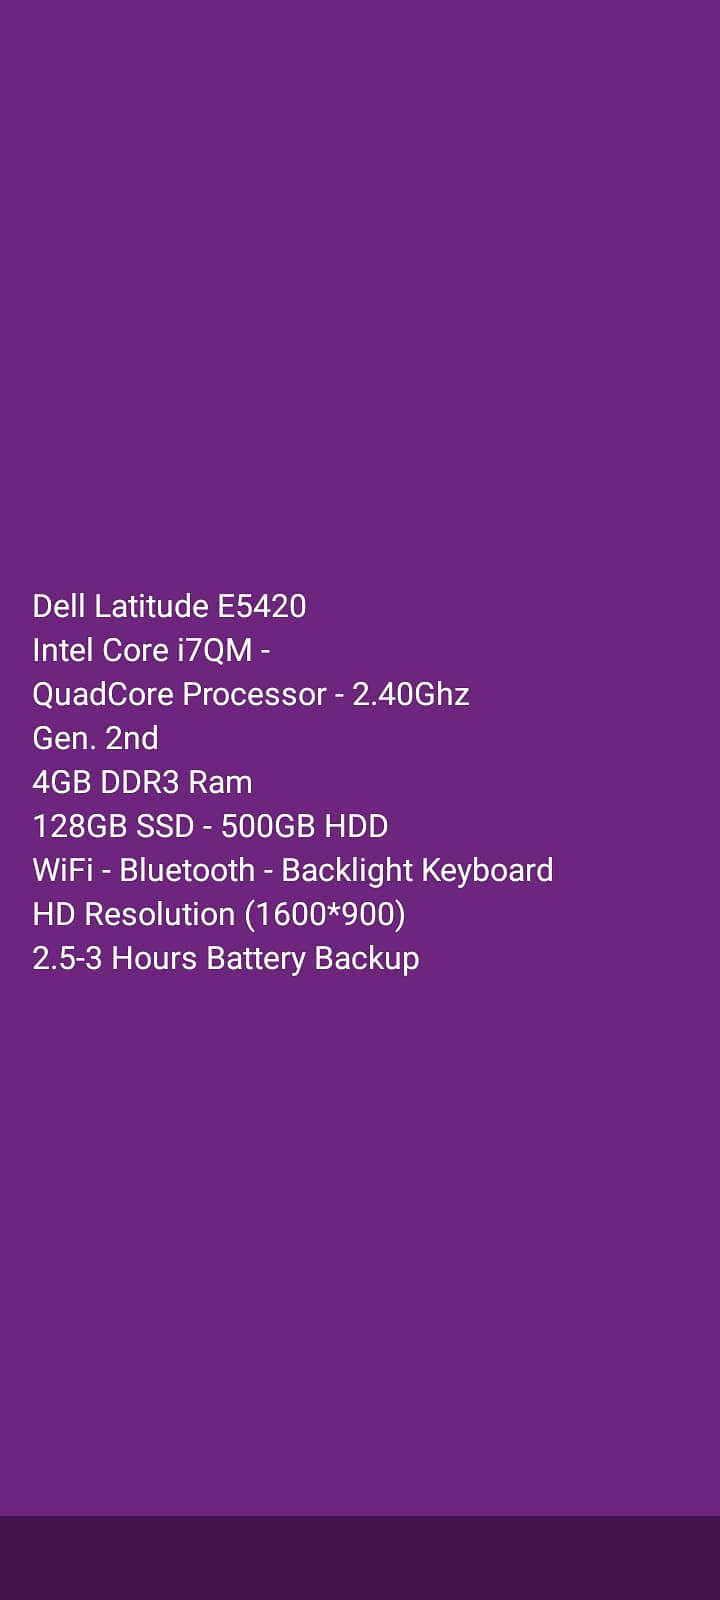 DELL LATITUDE E5420 CORE i7QM GEN. 2nd 4GB DDR3 RAM 128GB SSD 500GB HD 9